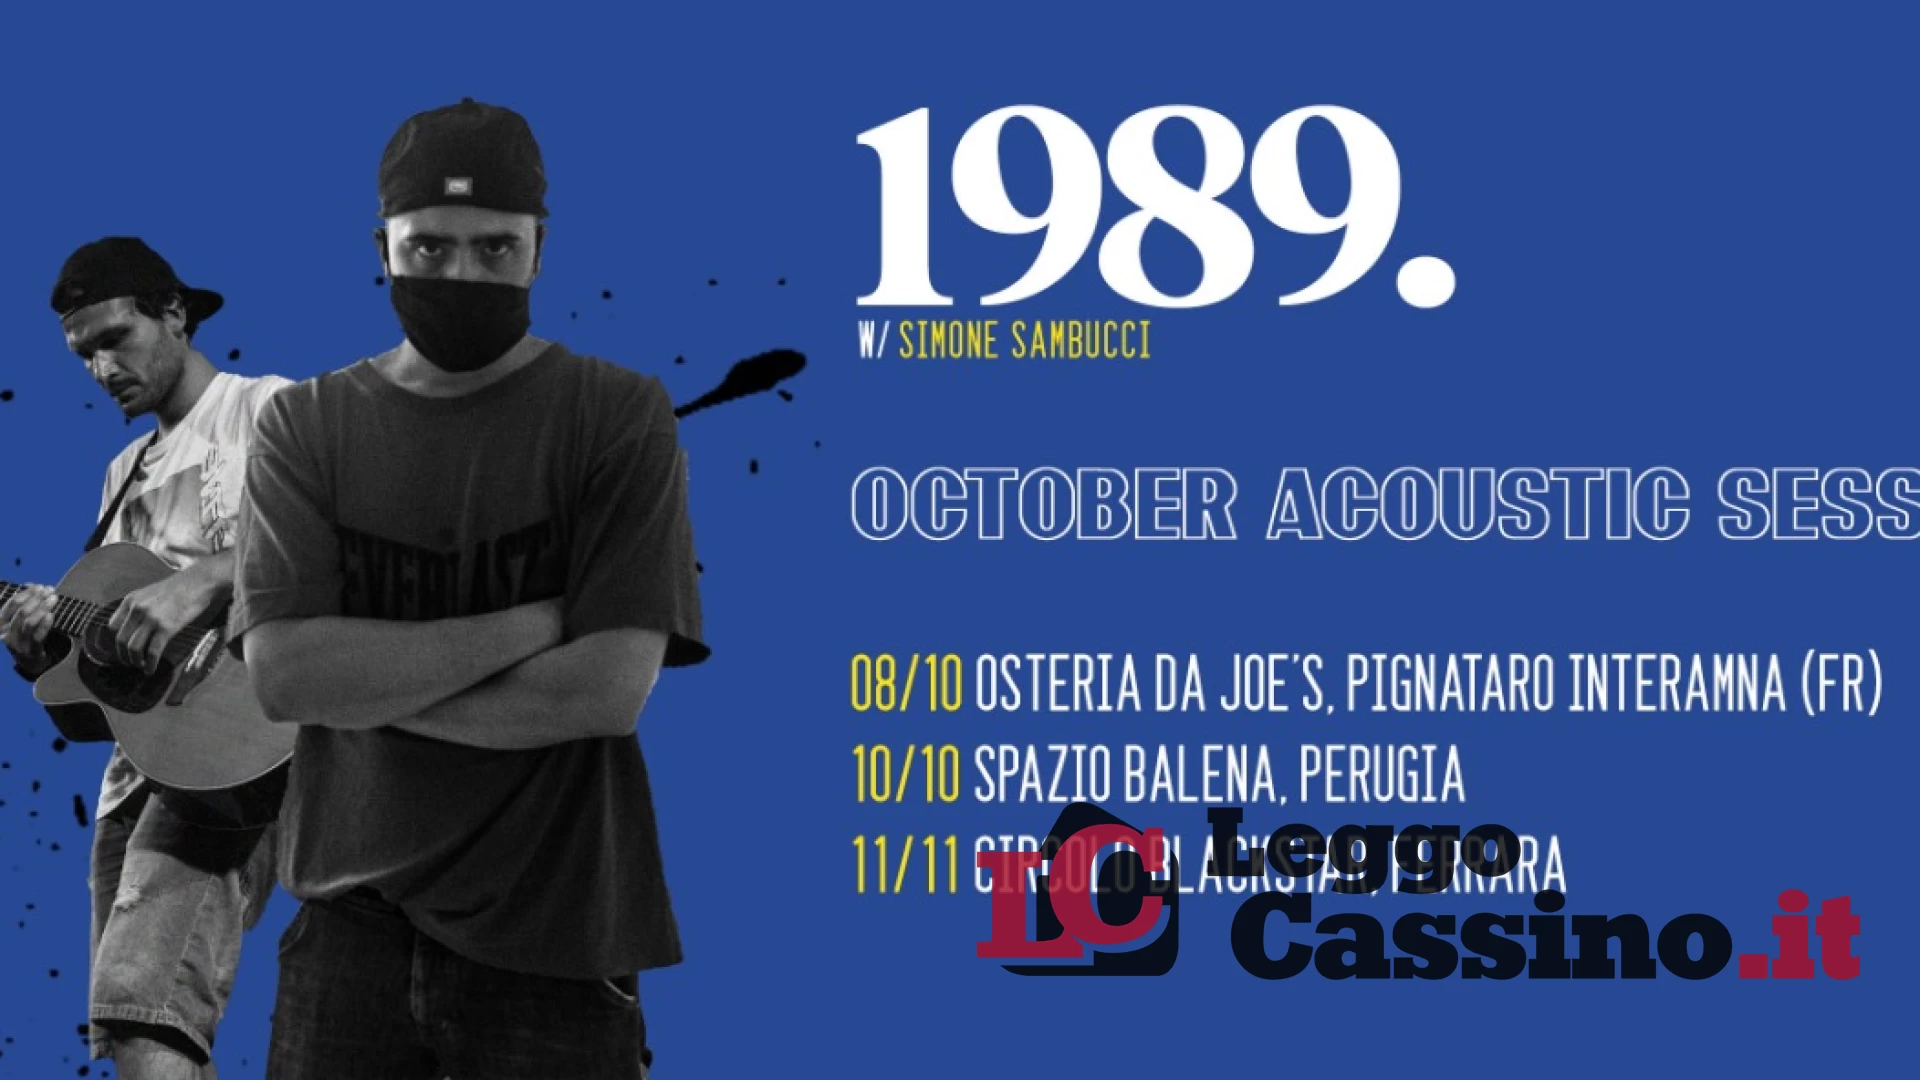 Il tour del rapper 1989 parte da Pignataro